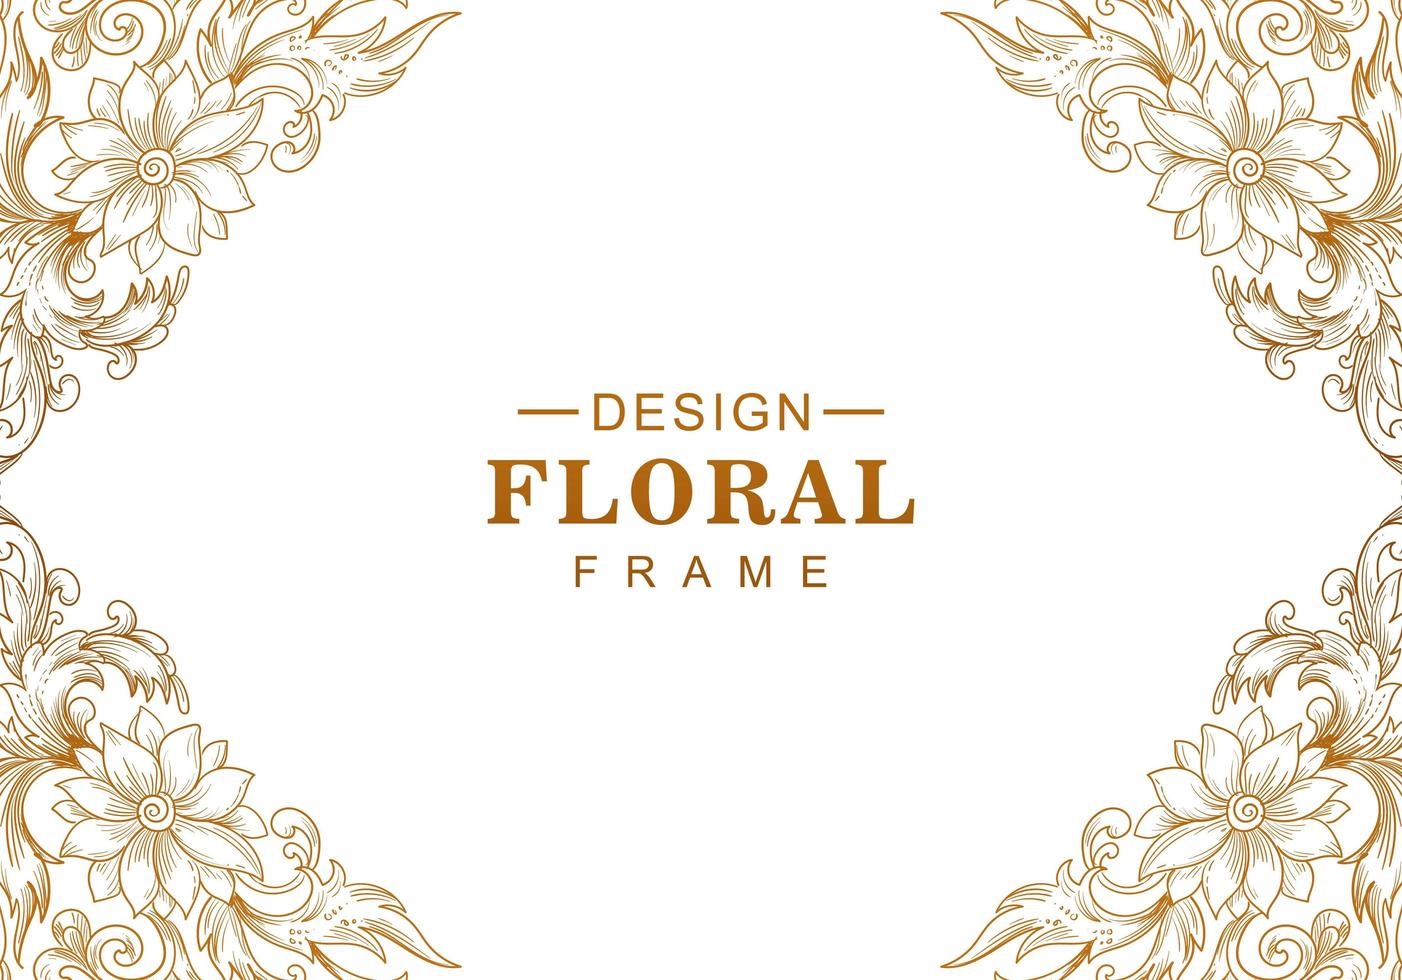 Ethnic decorative golden floral corner frame vector